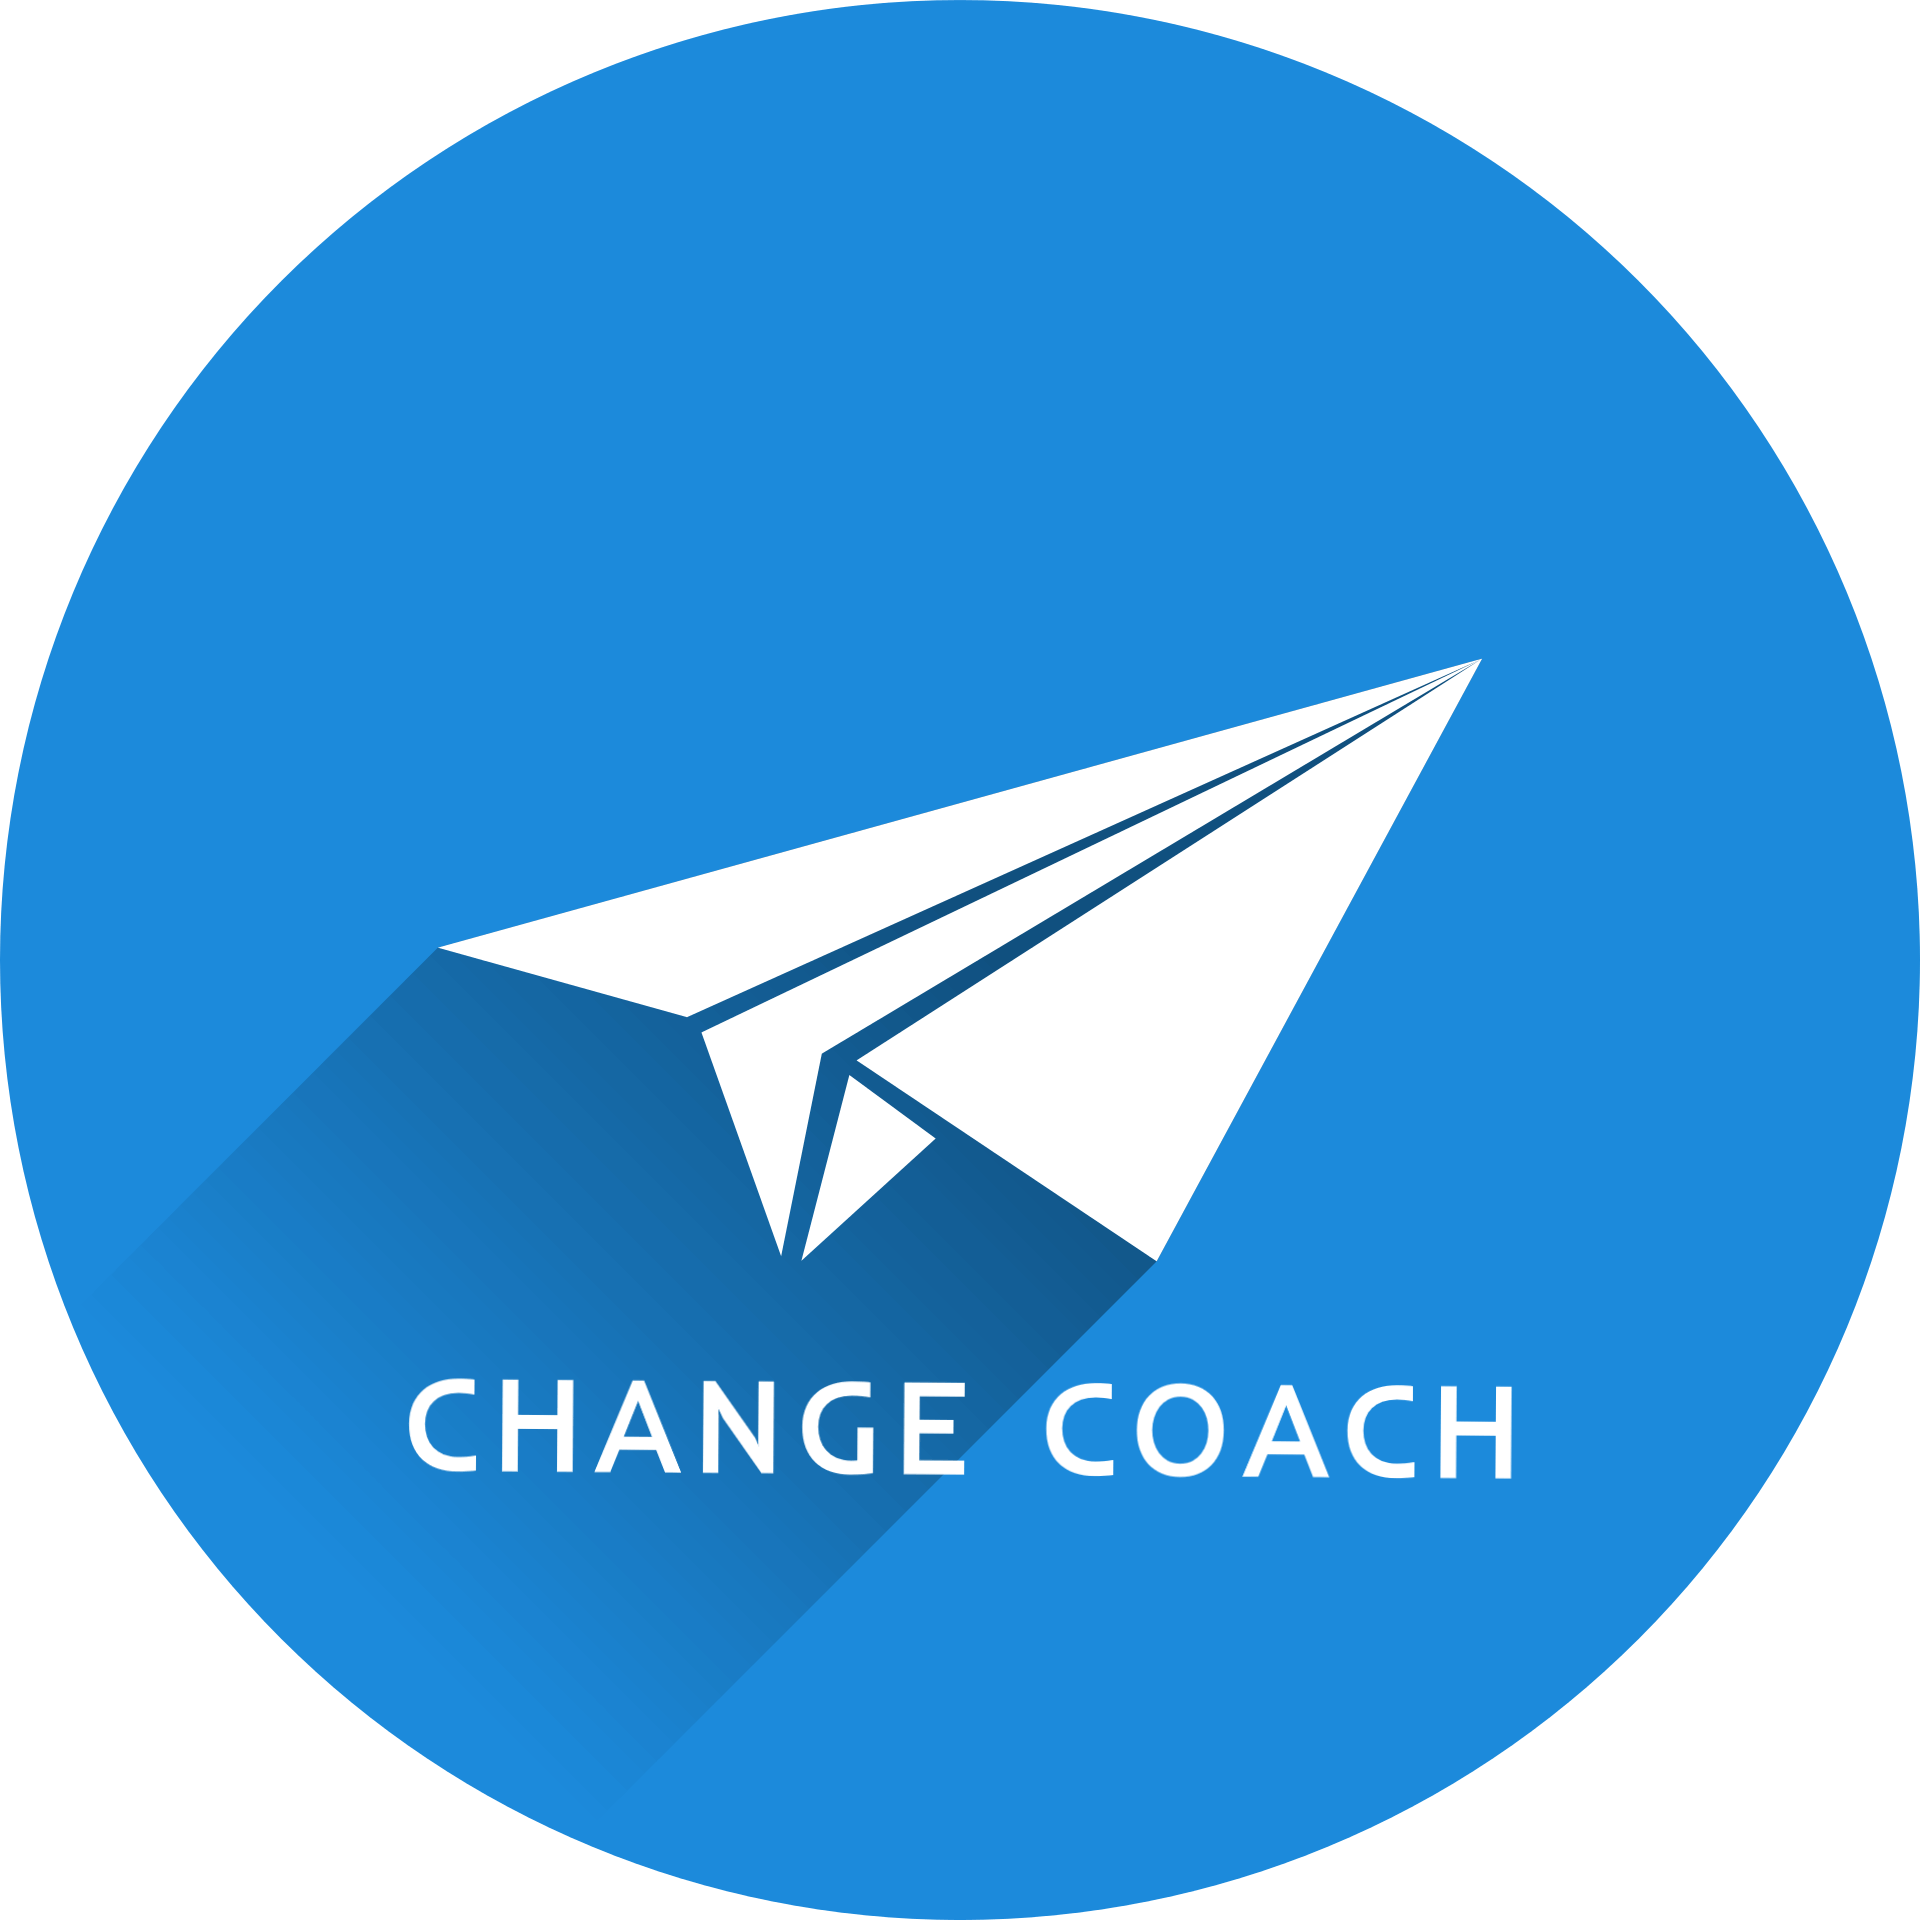 Change Coach logo